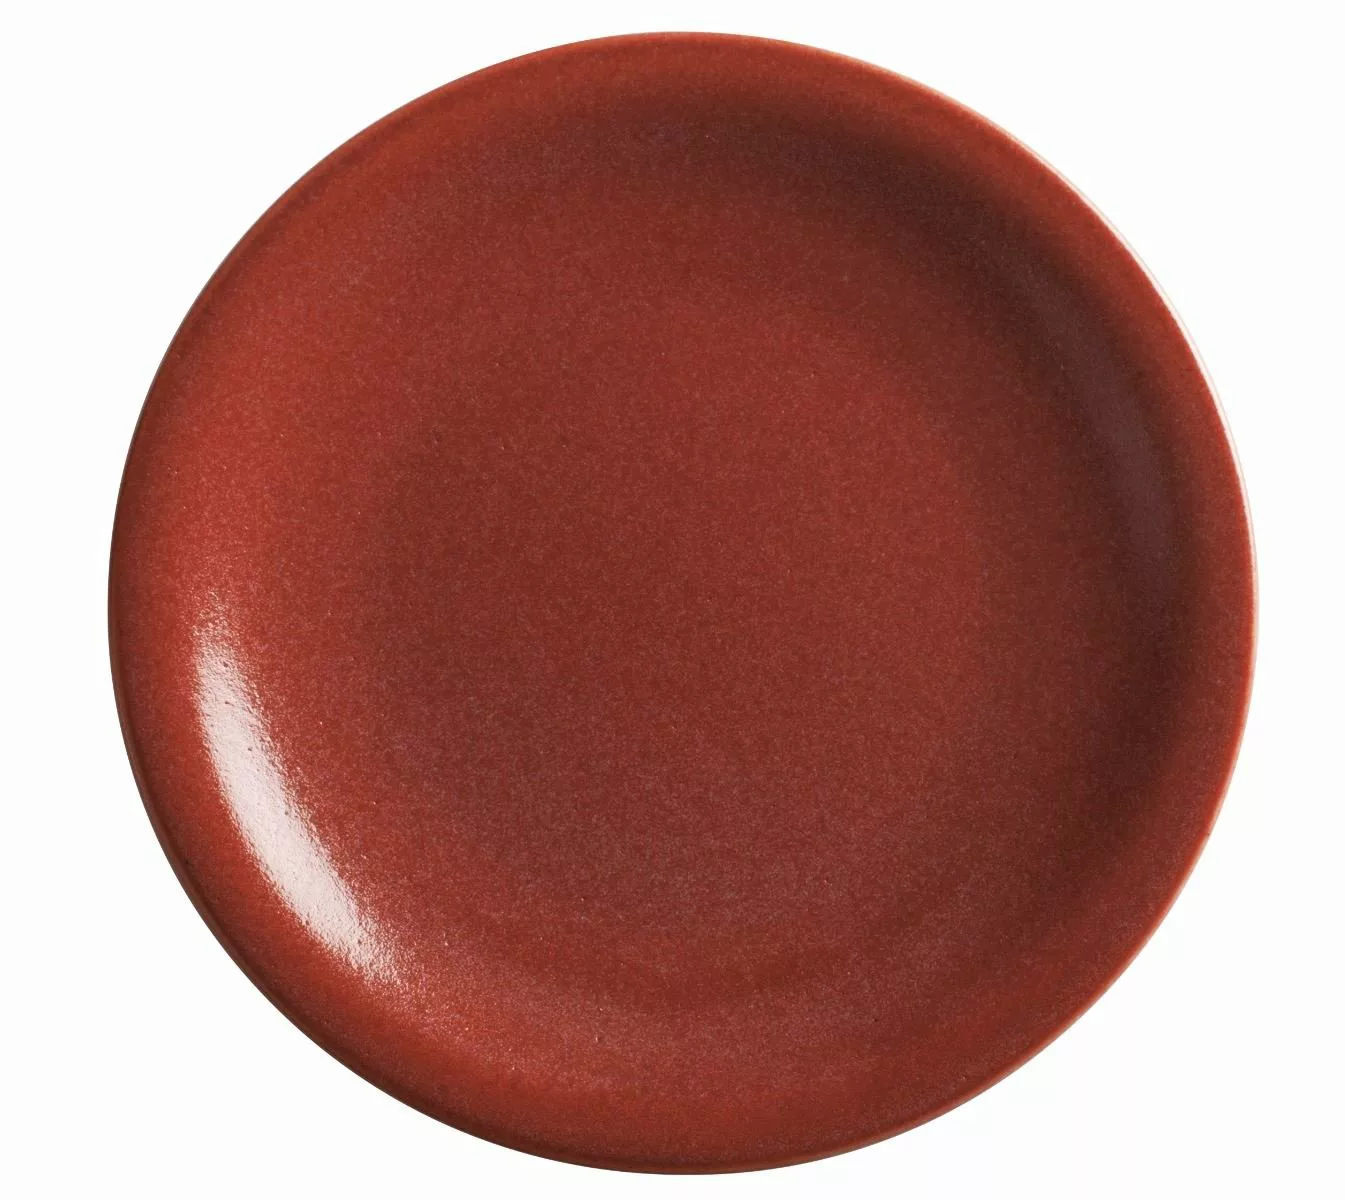 KAHLA siena red Homestyle siena red Teller flach 21,5 cm (rot) günstig online kaufen